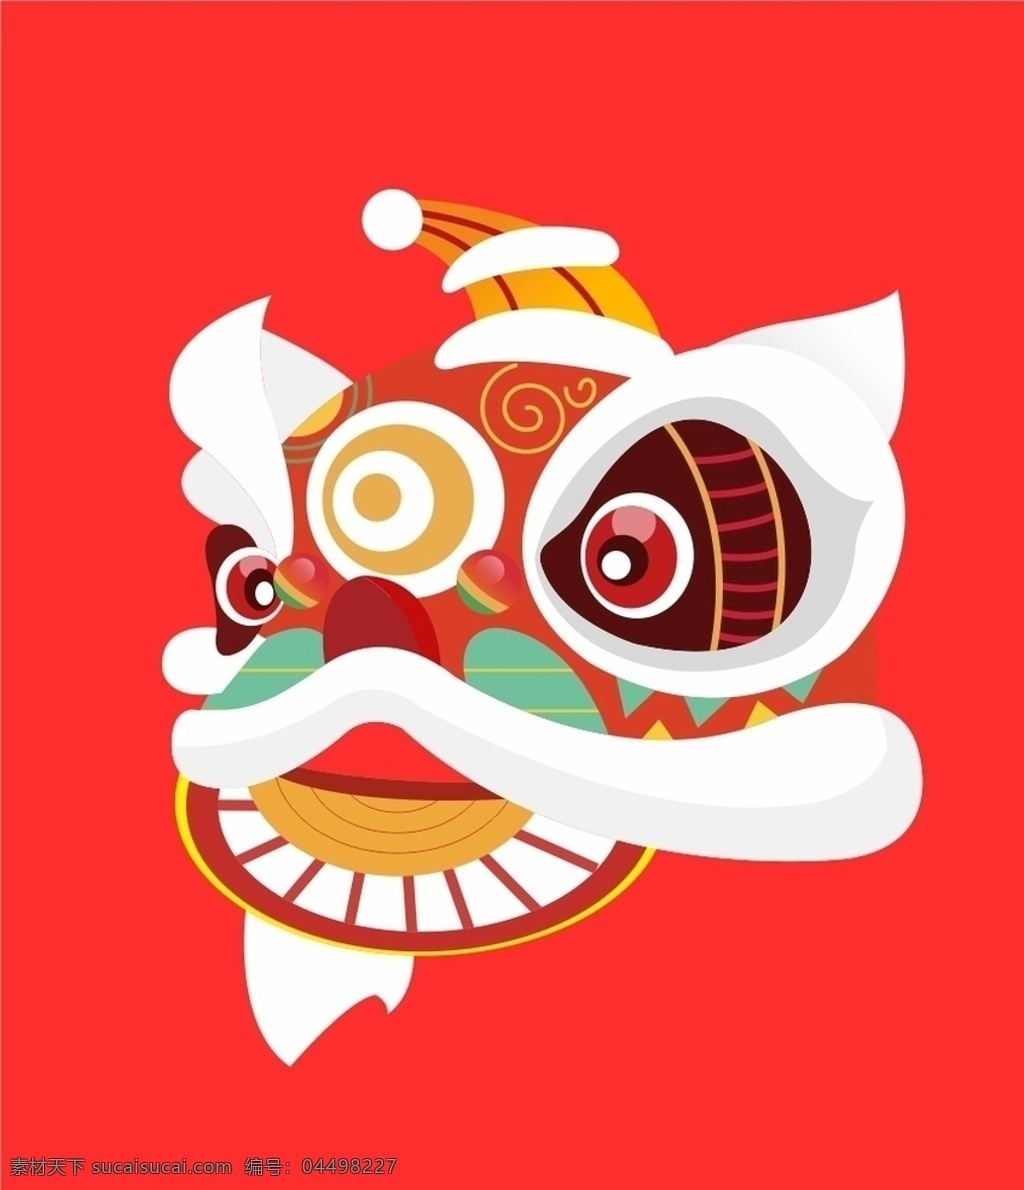 新年元素 传统民俗 中国元素 狮子 舞狮 过年 春节 鼠年 矢量醒狮